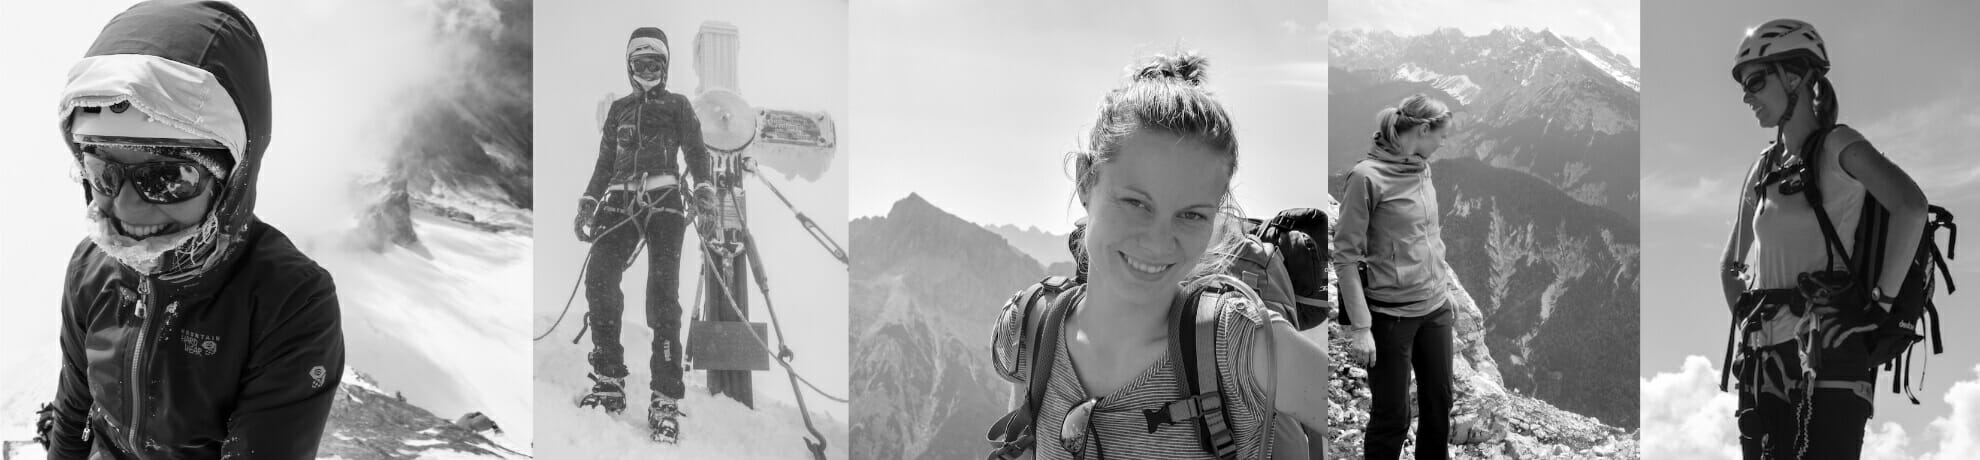 Portraitfotos in schwarz/weis von einer Bergsteigerin